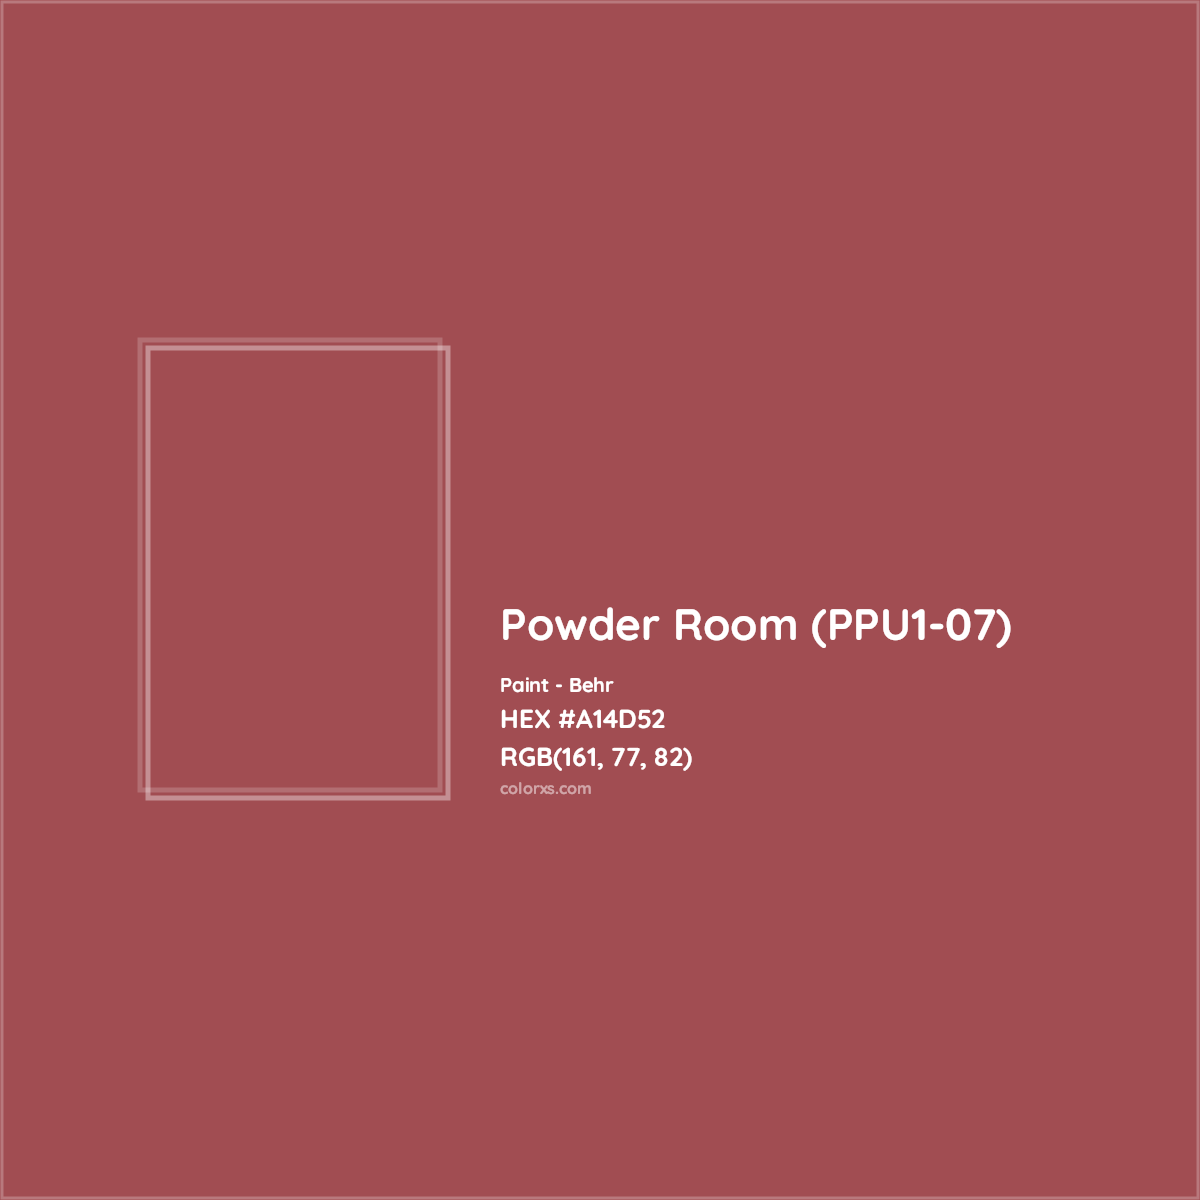 HEX #A14D52 Powder Room (PPU1-07) Paint Behr - Color Code